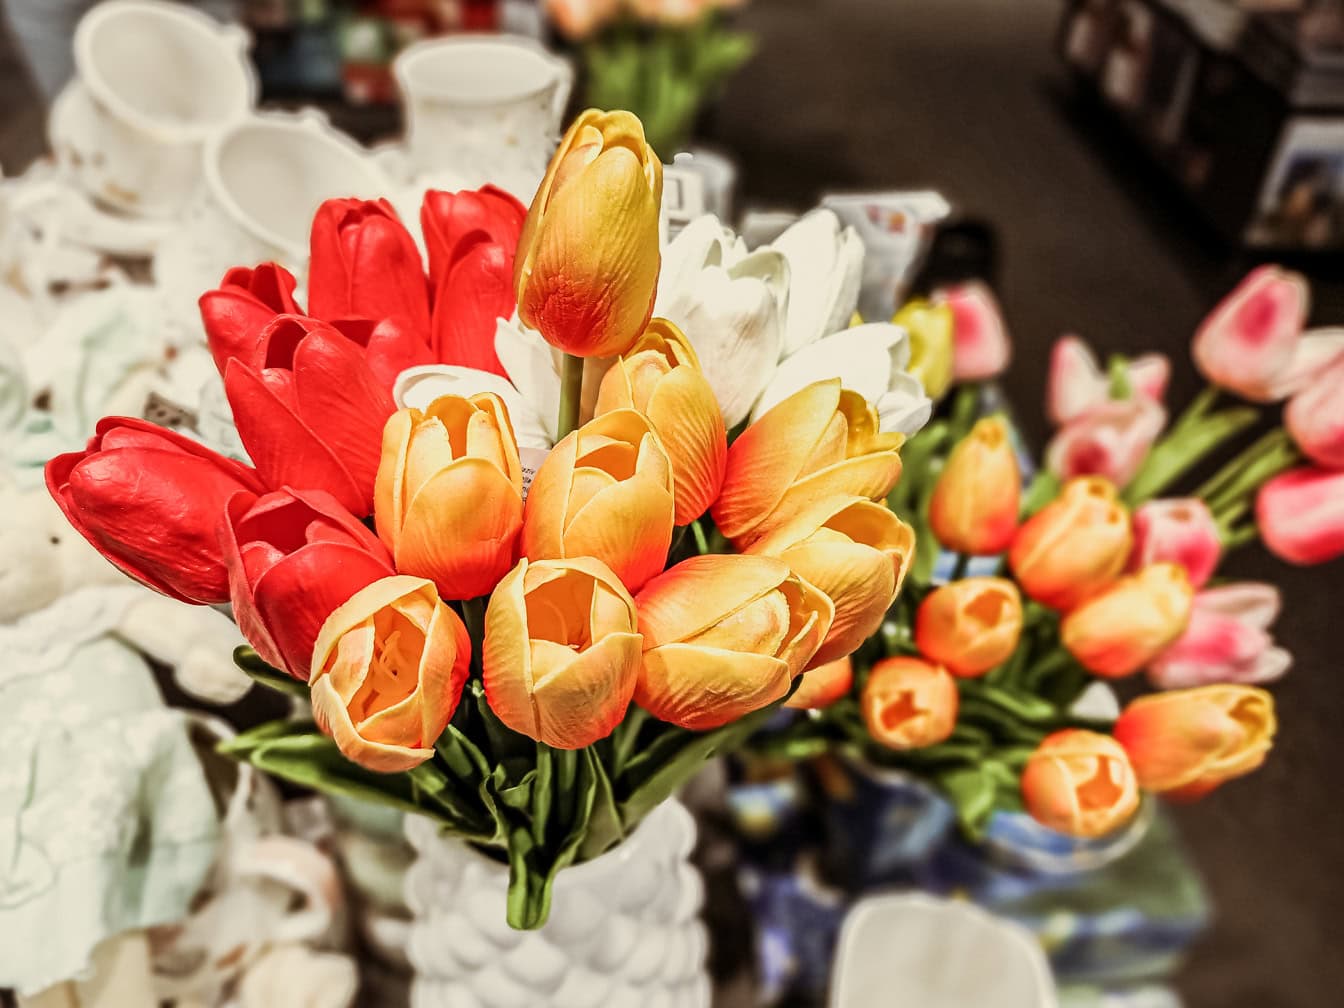 Bouquet de fleurs de tulipe jaune orangé en plastique à l’intérieur de la boutique entre autres marchandises